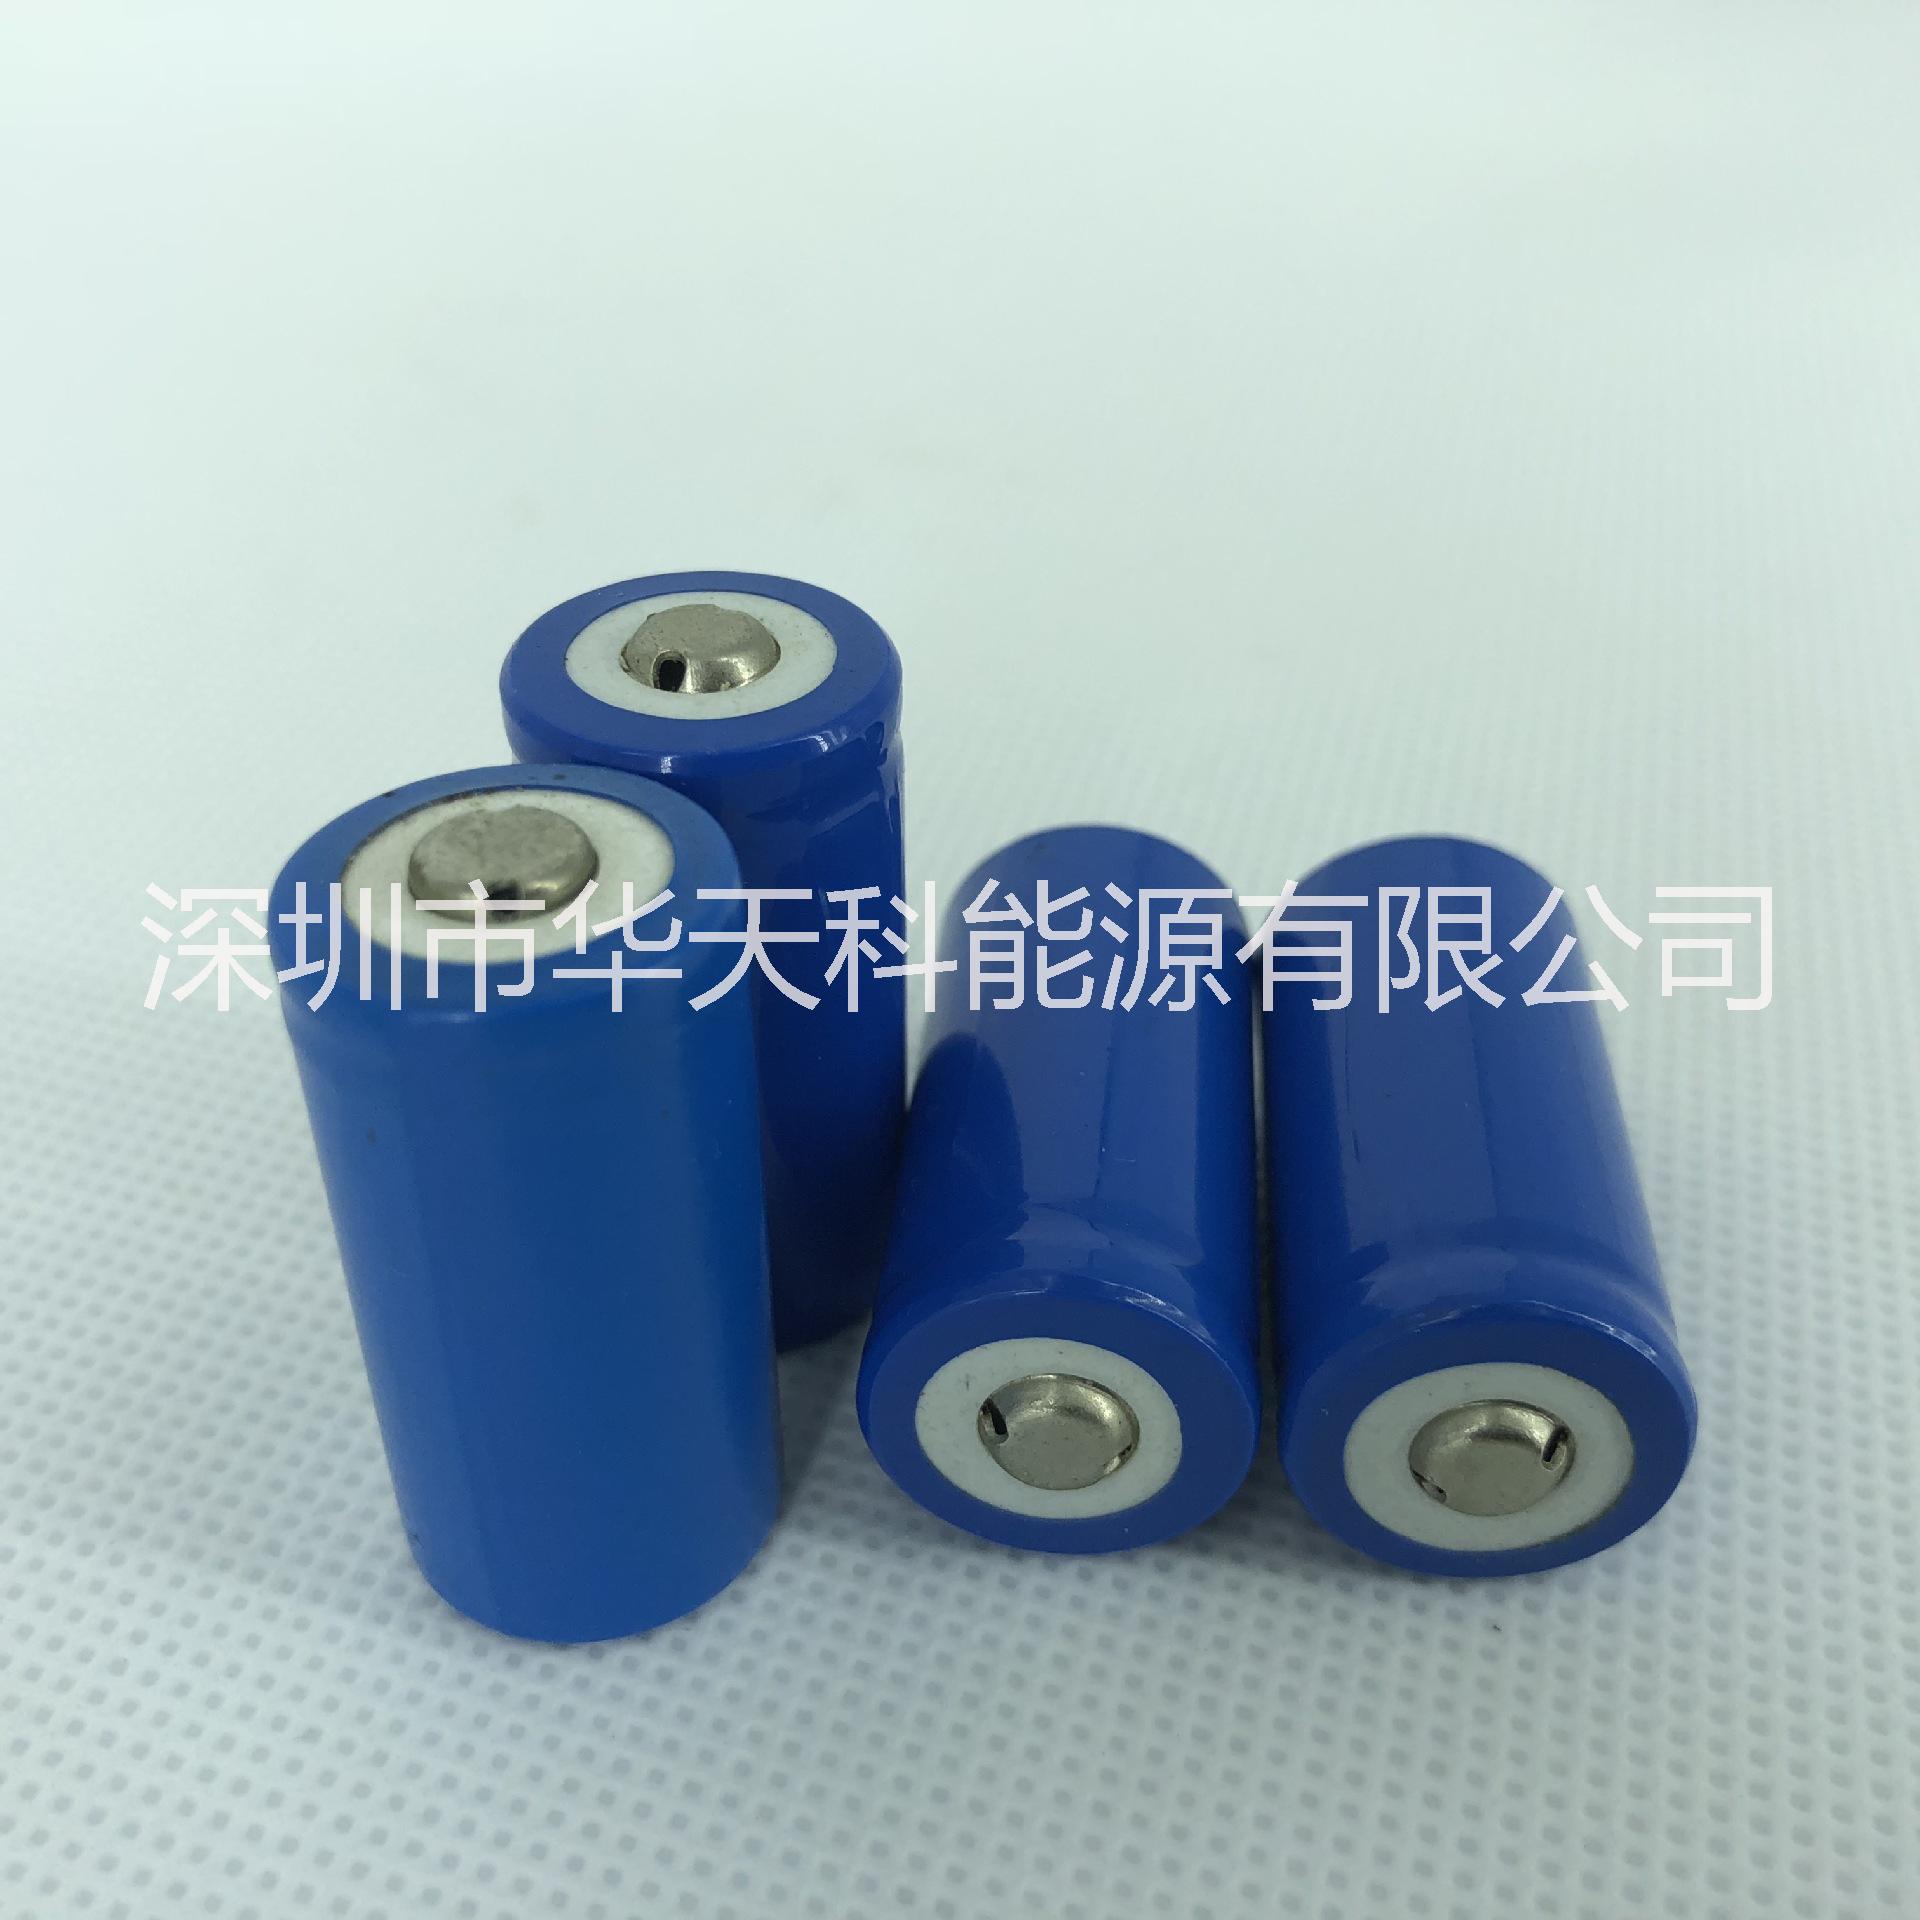 东莞市ICR17280锂电池厂家现货供应ICR17280锂电池3.7V600mAh锂电池17280长期大量批发